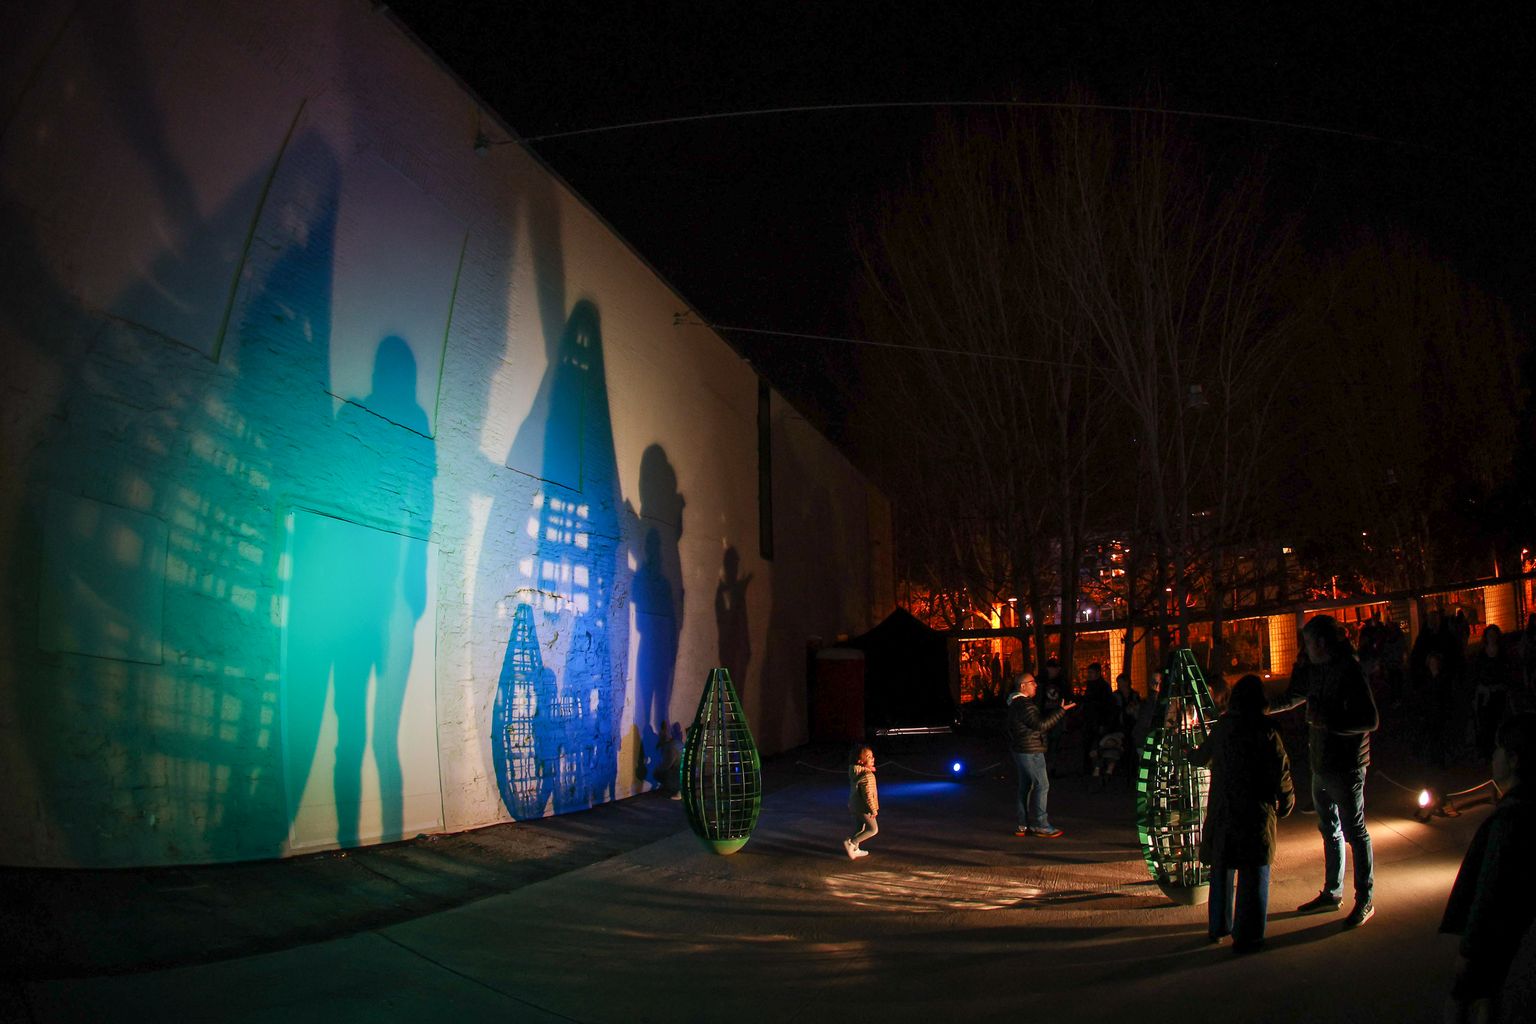 En la pared, las sombras de personas paseando al lado de la obra “Rocking modules”, por Gijs Coenen